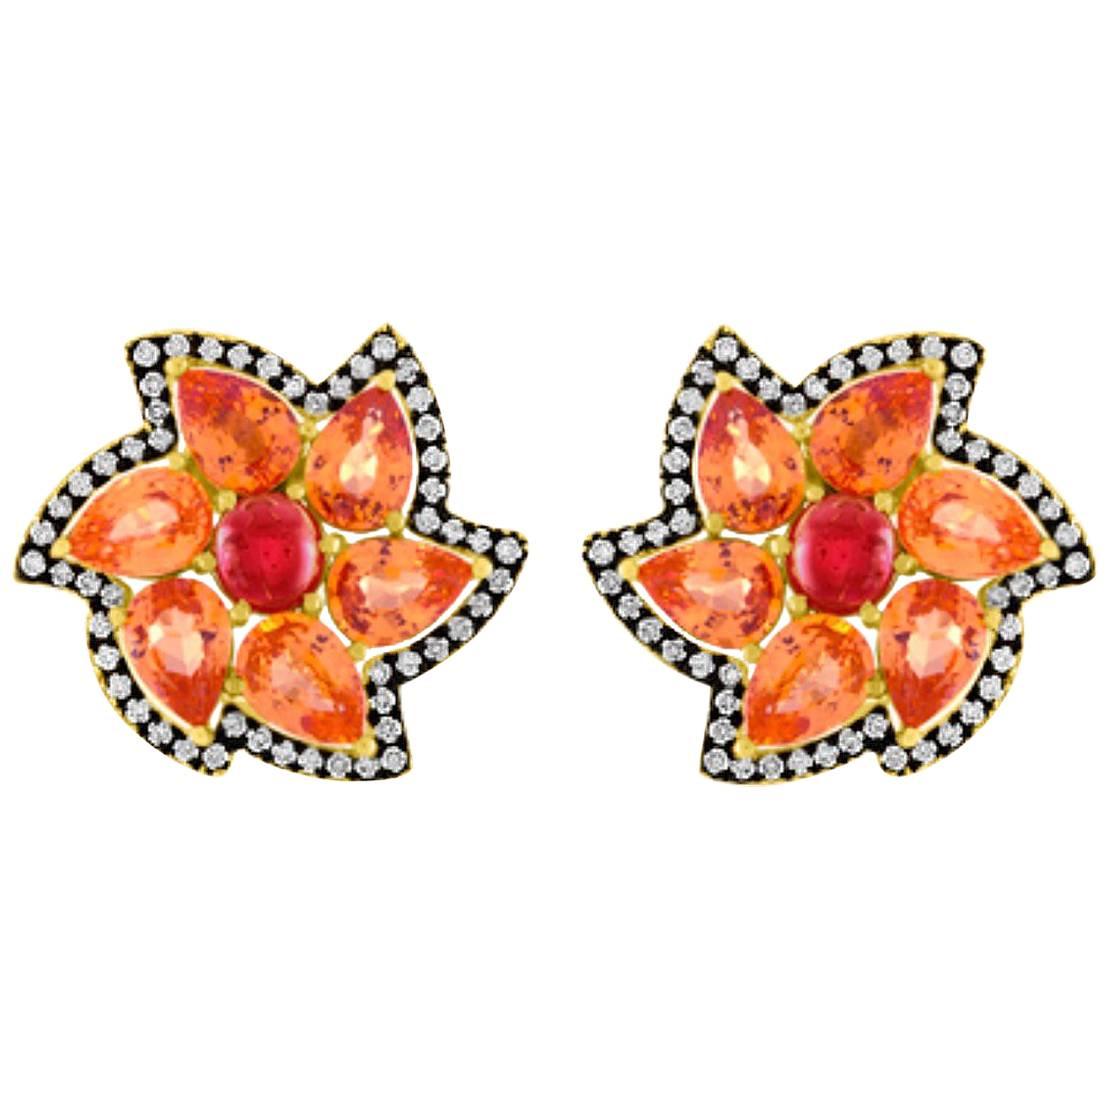 Specitite Garnet Red Spinel Diamond Gold Earrings